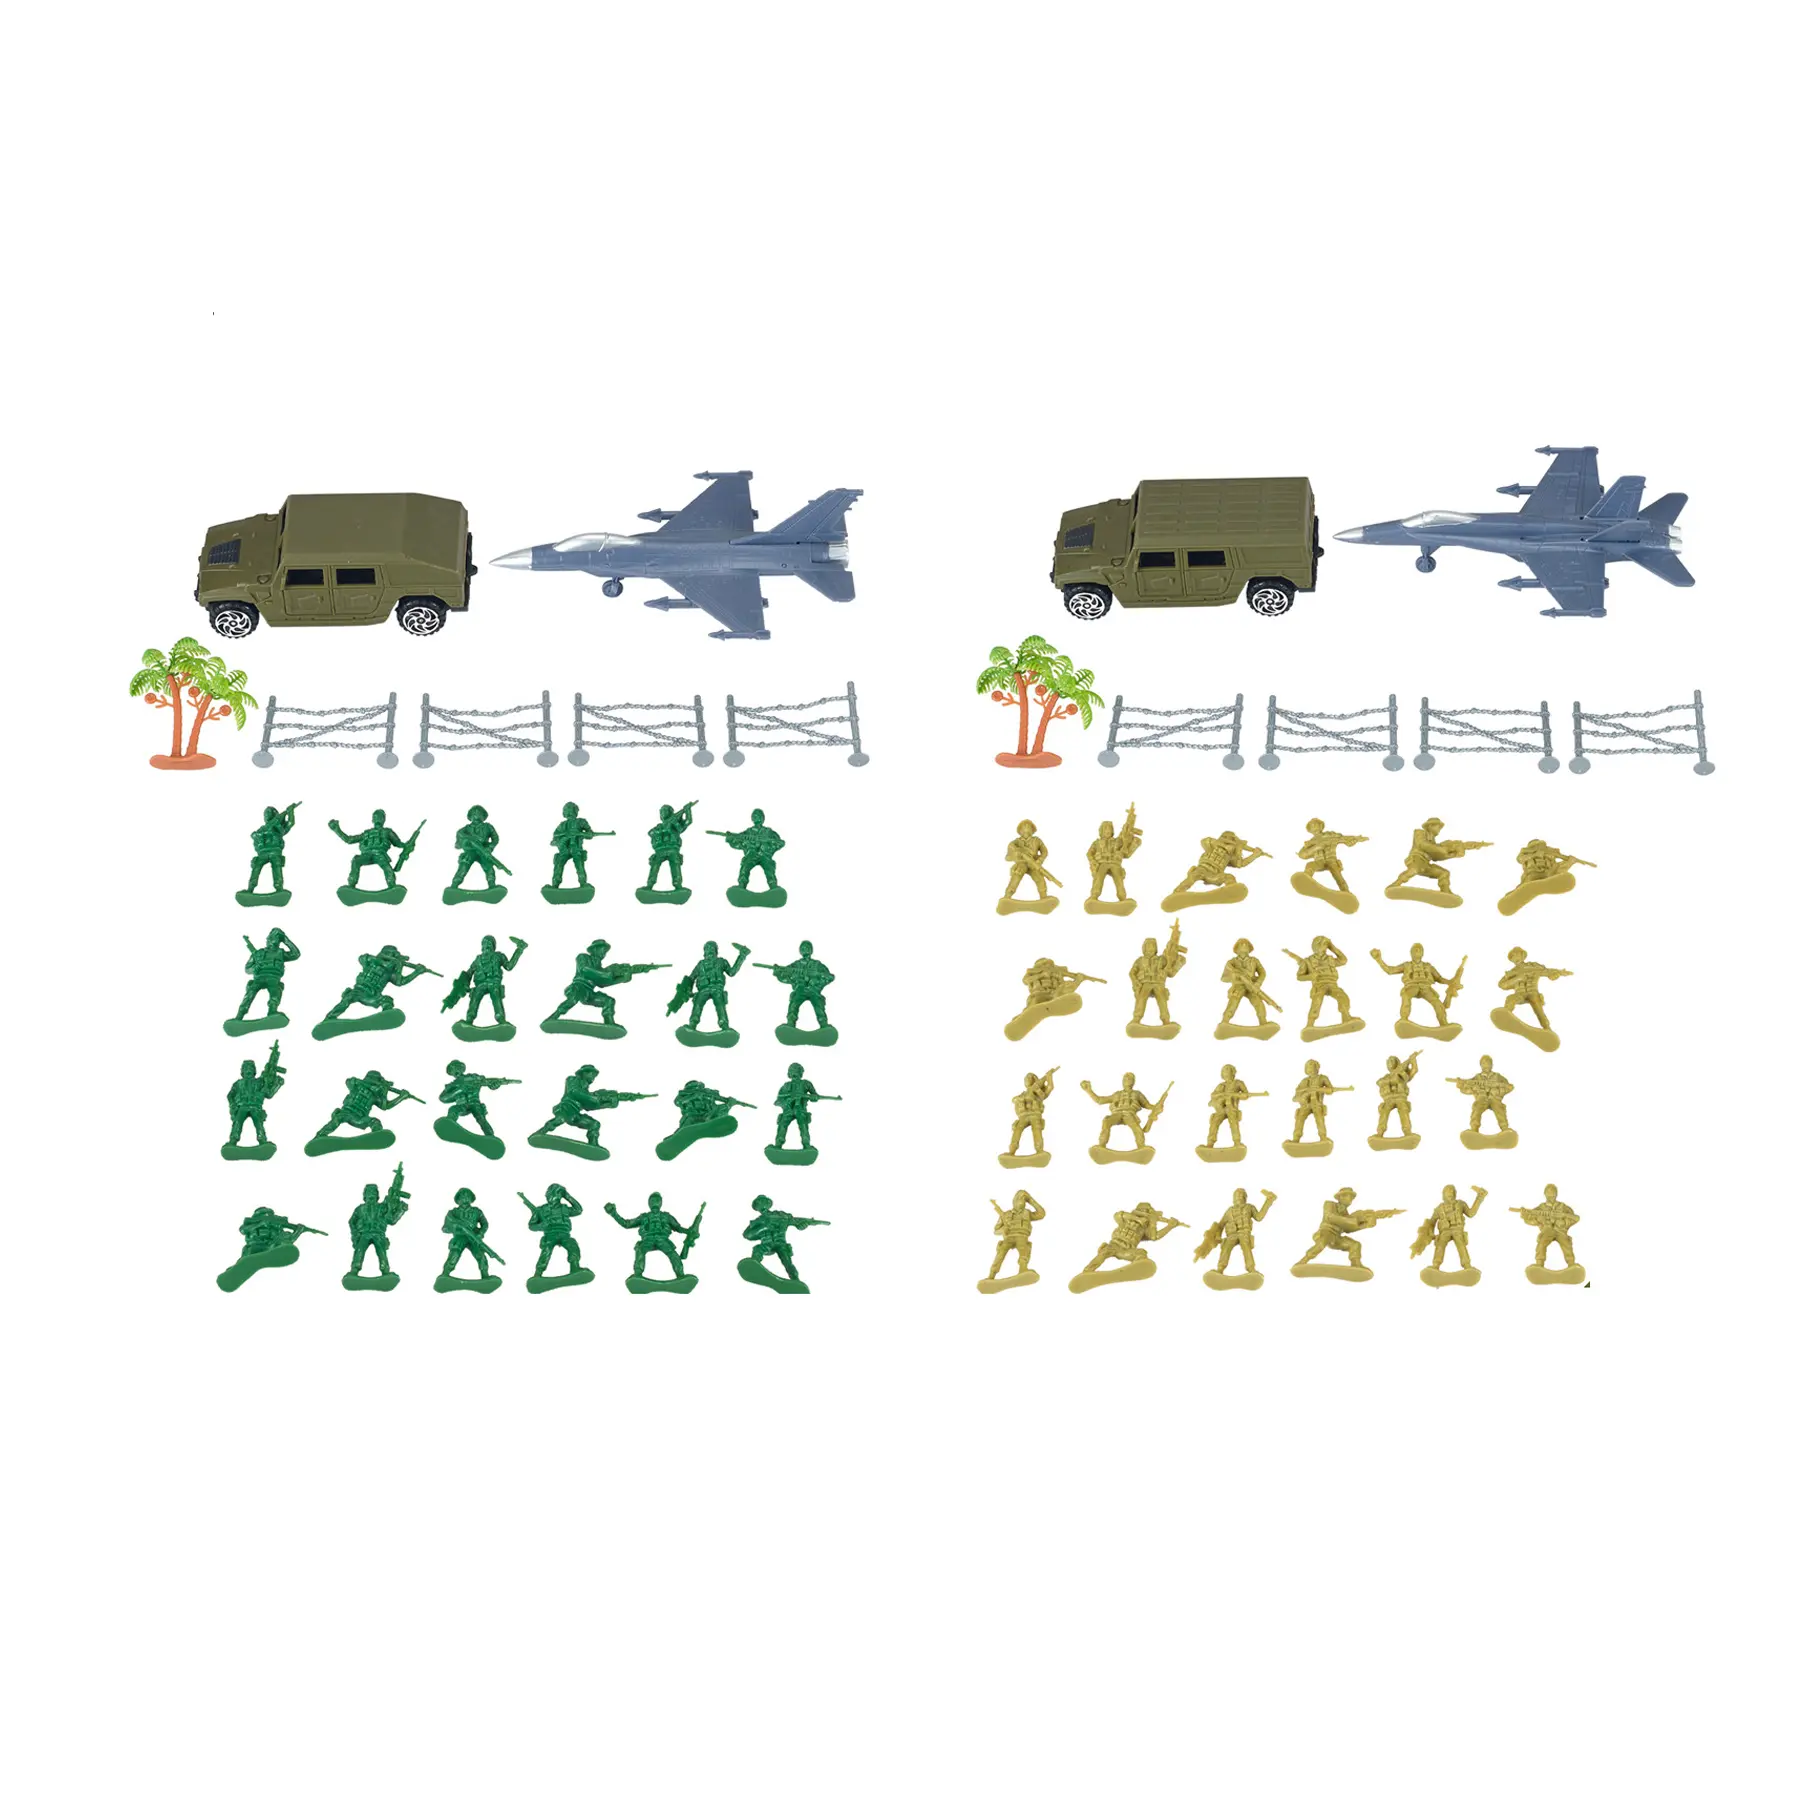 31 adet çeşitli ordu askeri serisi aksiyon figürleri çeşitli Set asker oyun seti uçak modelleri oyuncak çocuklar için